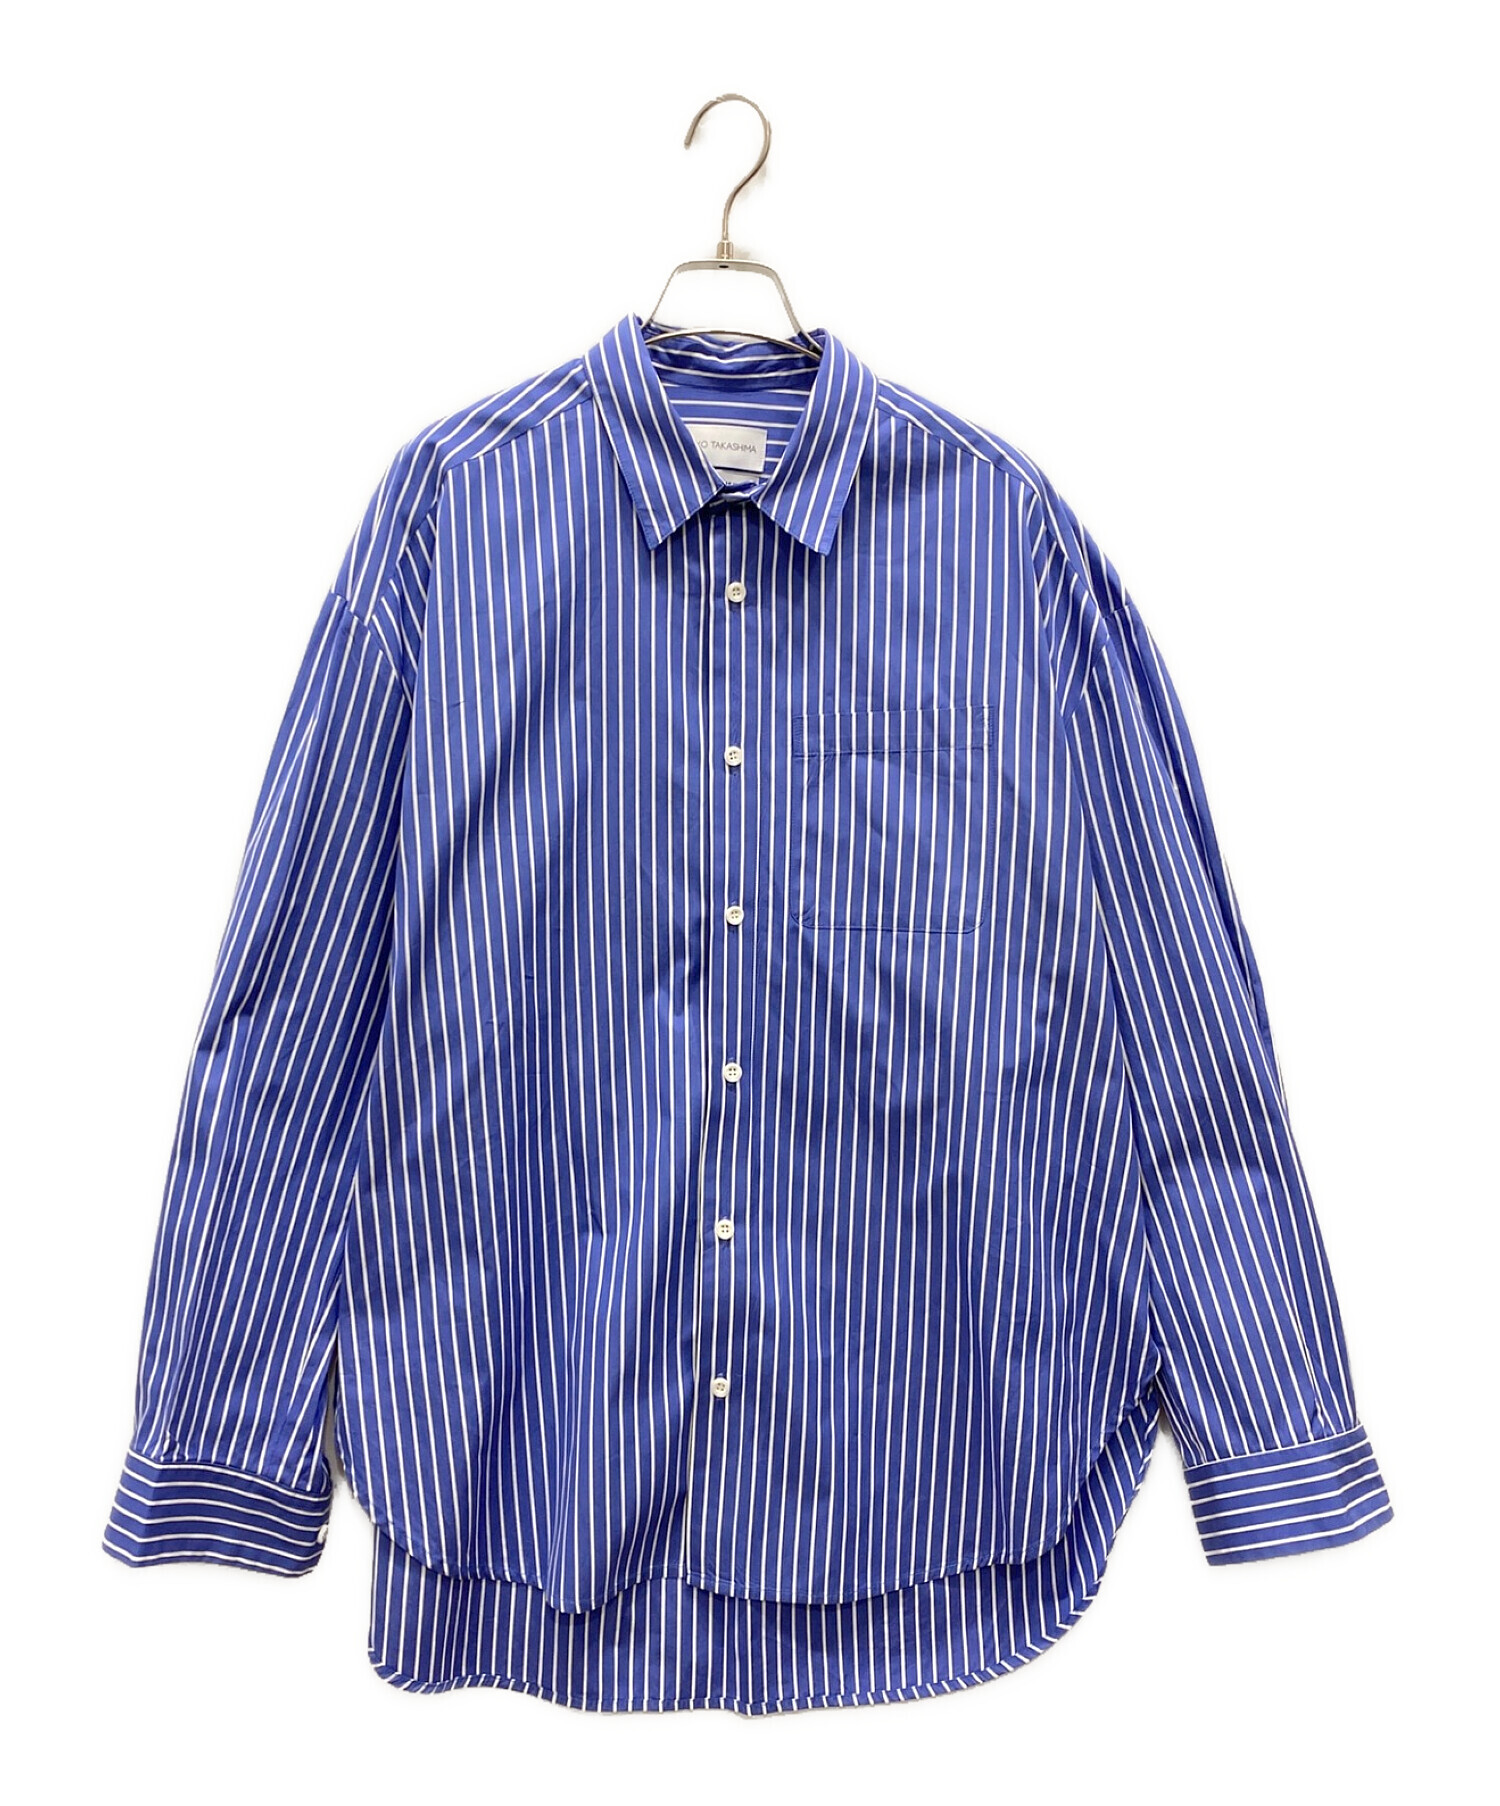 ryo takashima ストライプシャツ - シャツ